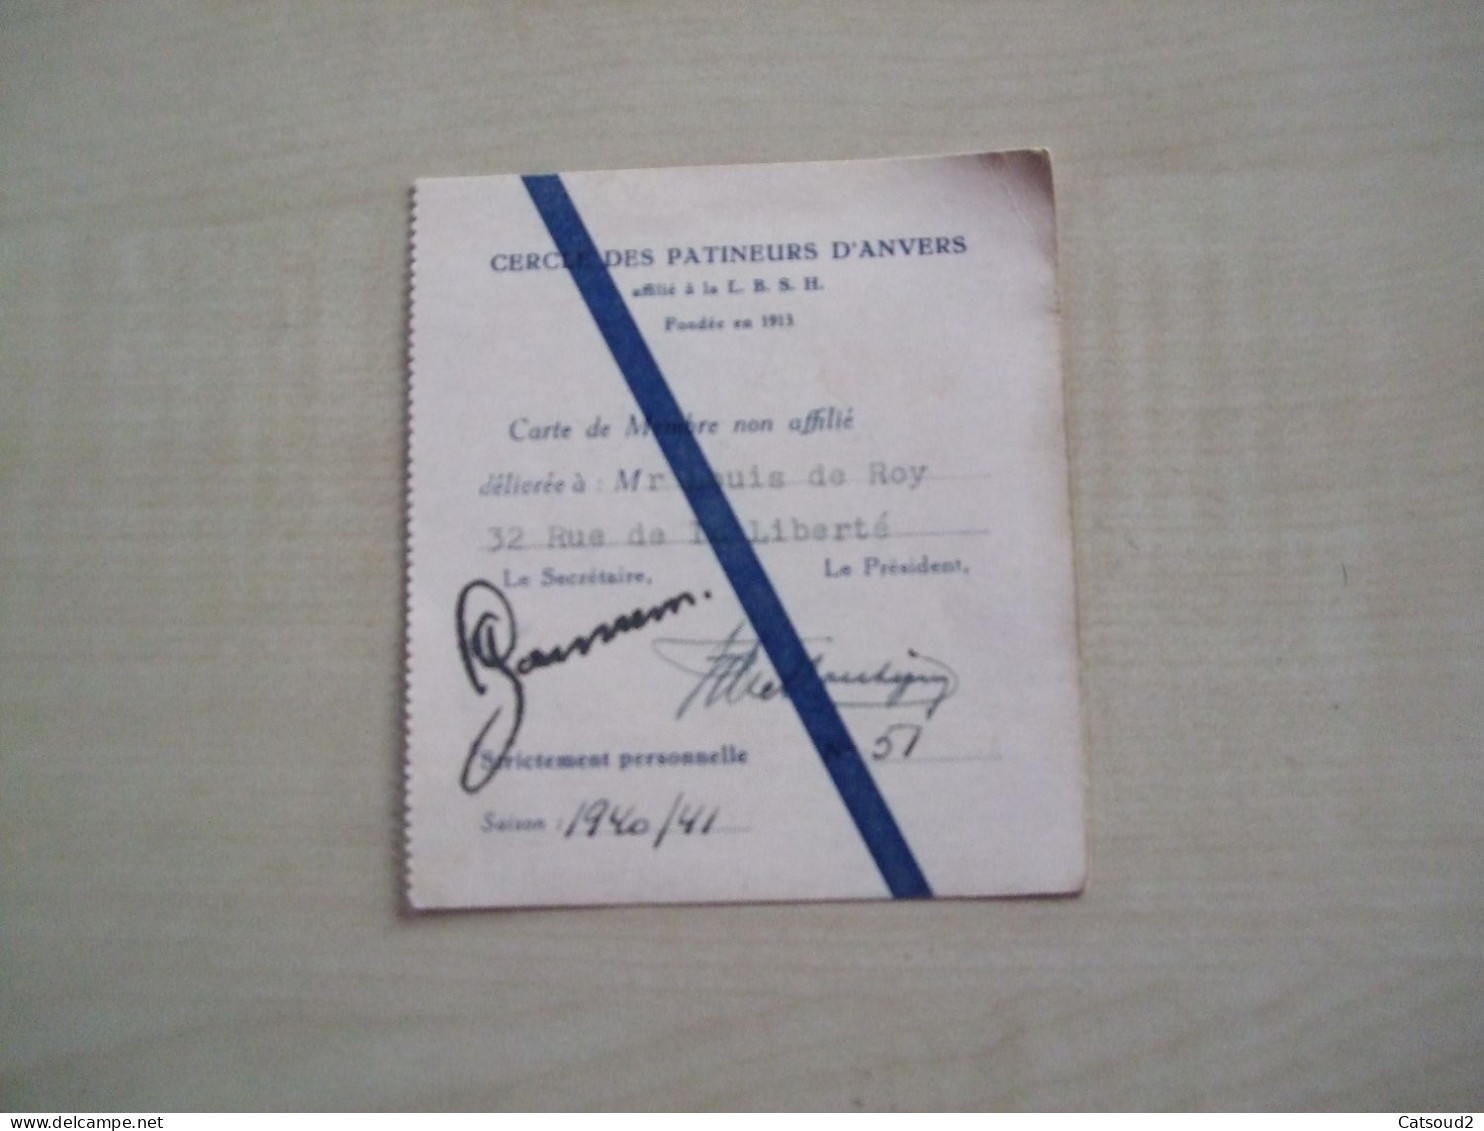 Carte De Membre Ancienne 1940/41 CERCLE DES PATINEURS D'ANVERS - Cartes De Membre